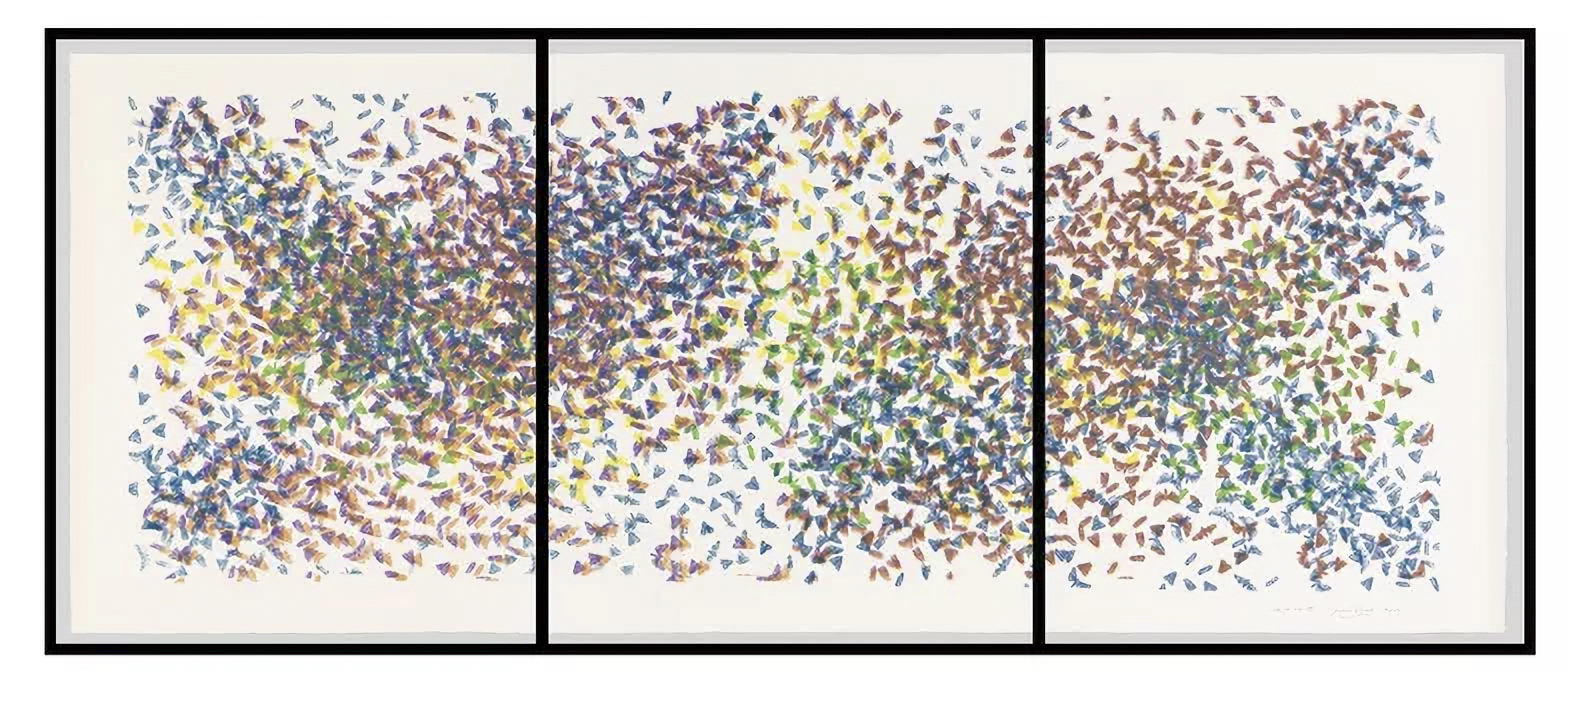 James Prosek, Moth Cluster IV, 2016